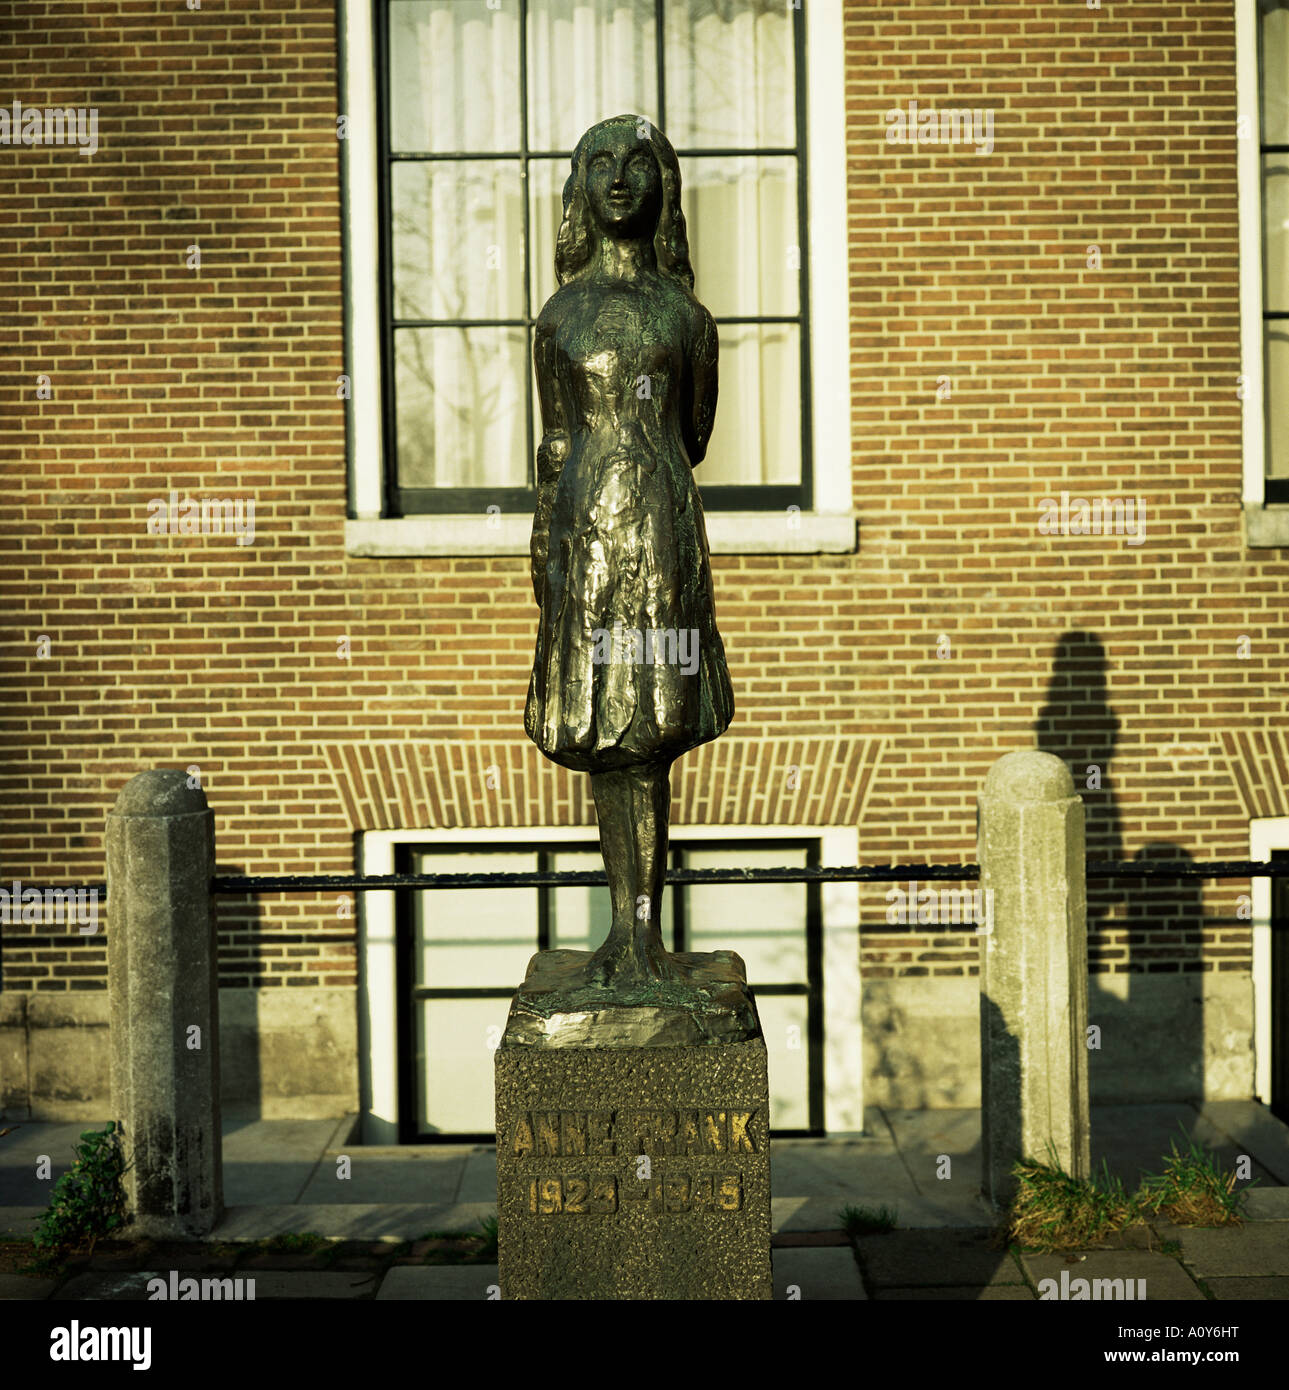 Statue d'Anne Frank la fille juive qui a écrit un journal intime tout en se cachant des Nazis pendant la Seconde Guerre mondiale Amsterdam Pays-Bas Europe Banque D'Images